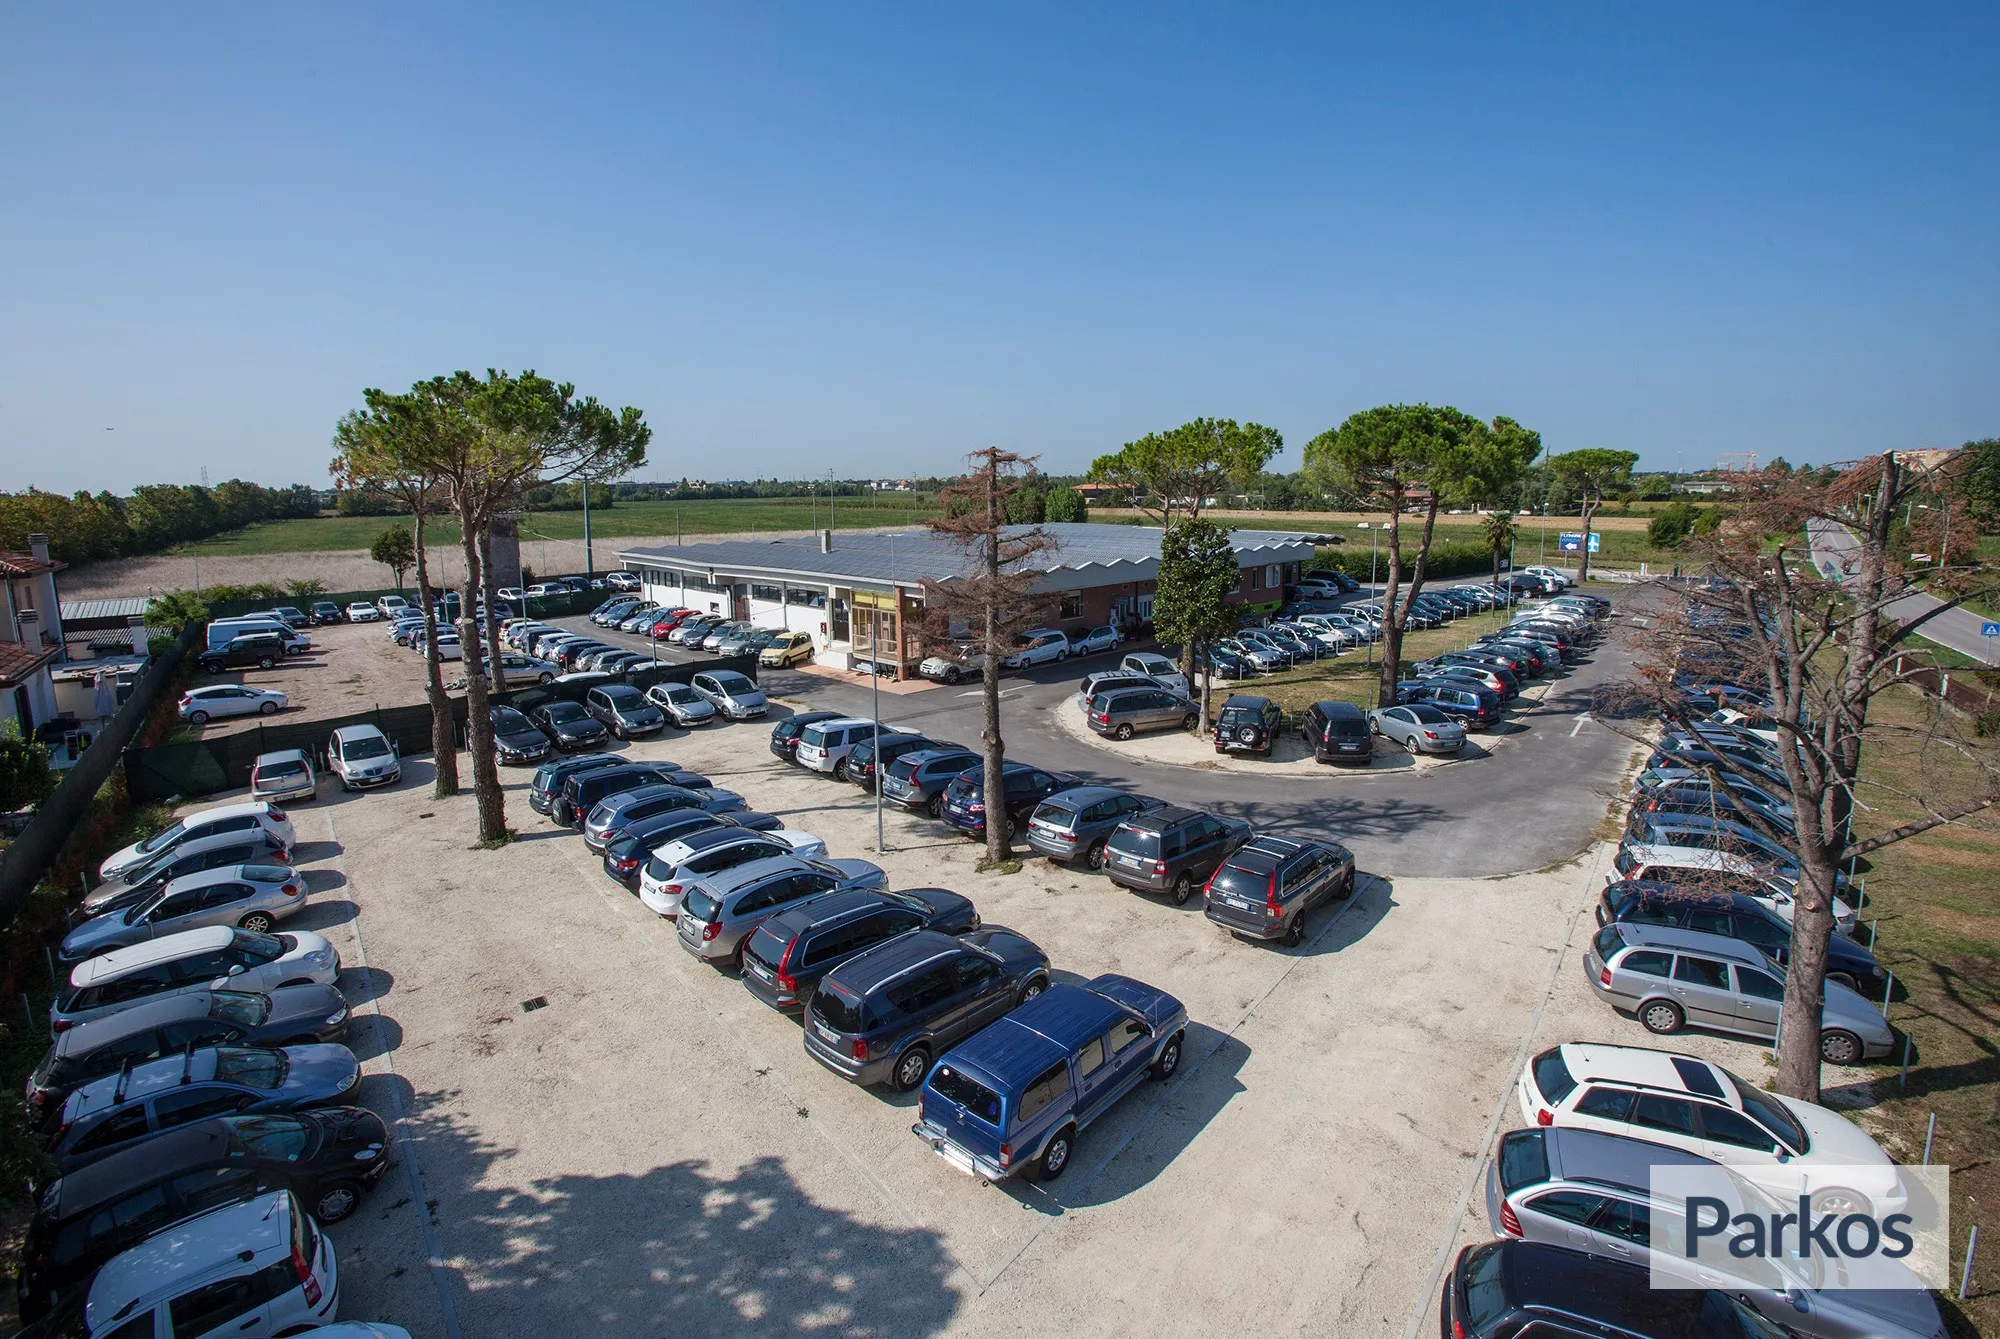 Fly Park Venezia (Paga in parcheggio) - Venice Airport Parking - picture 1